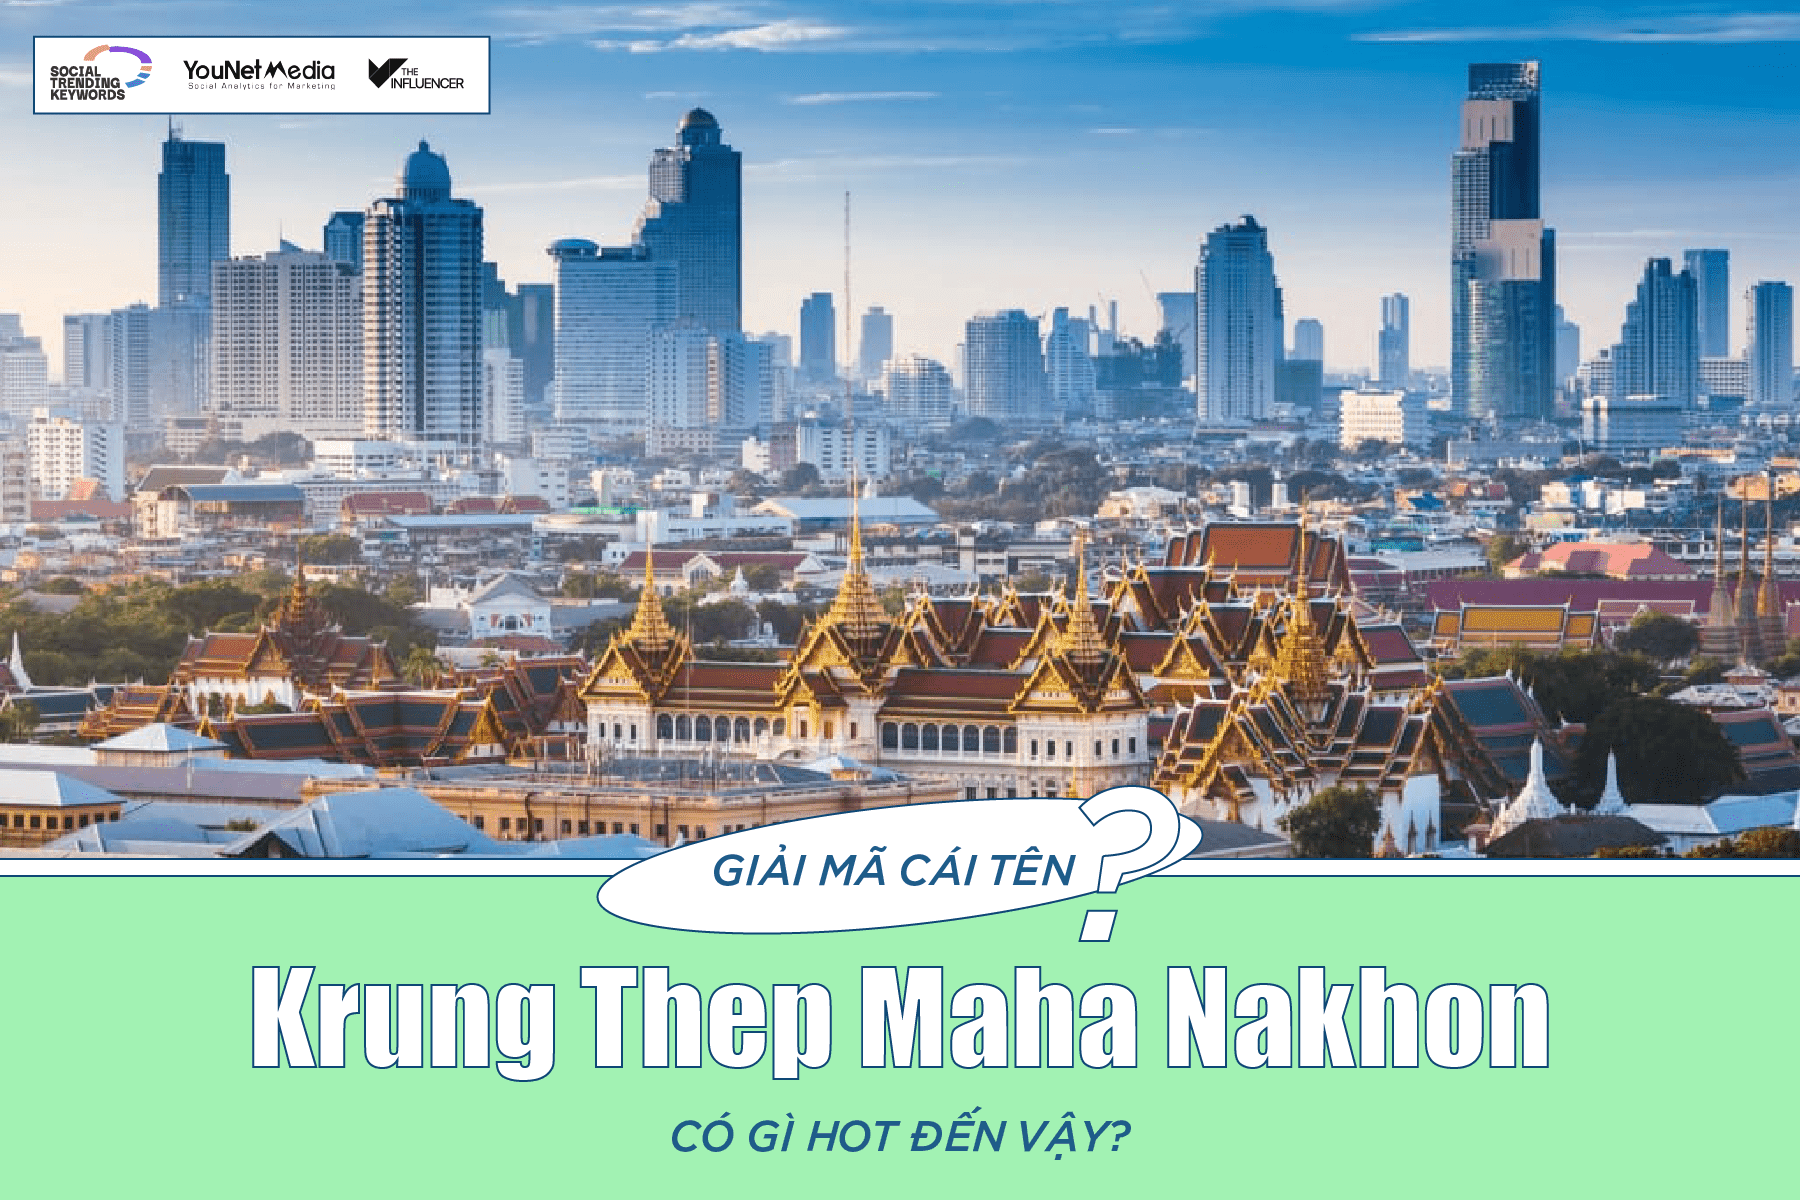 #SocialTrendingKeywords: Krung Thep Maha Nakhon là gì mà gây xôn xao đến vậy?